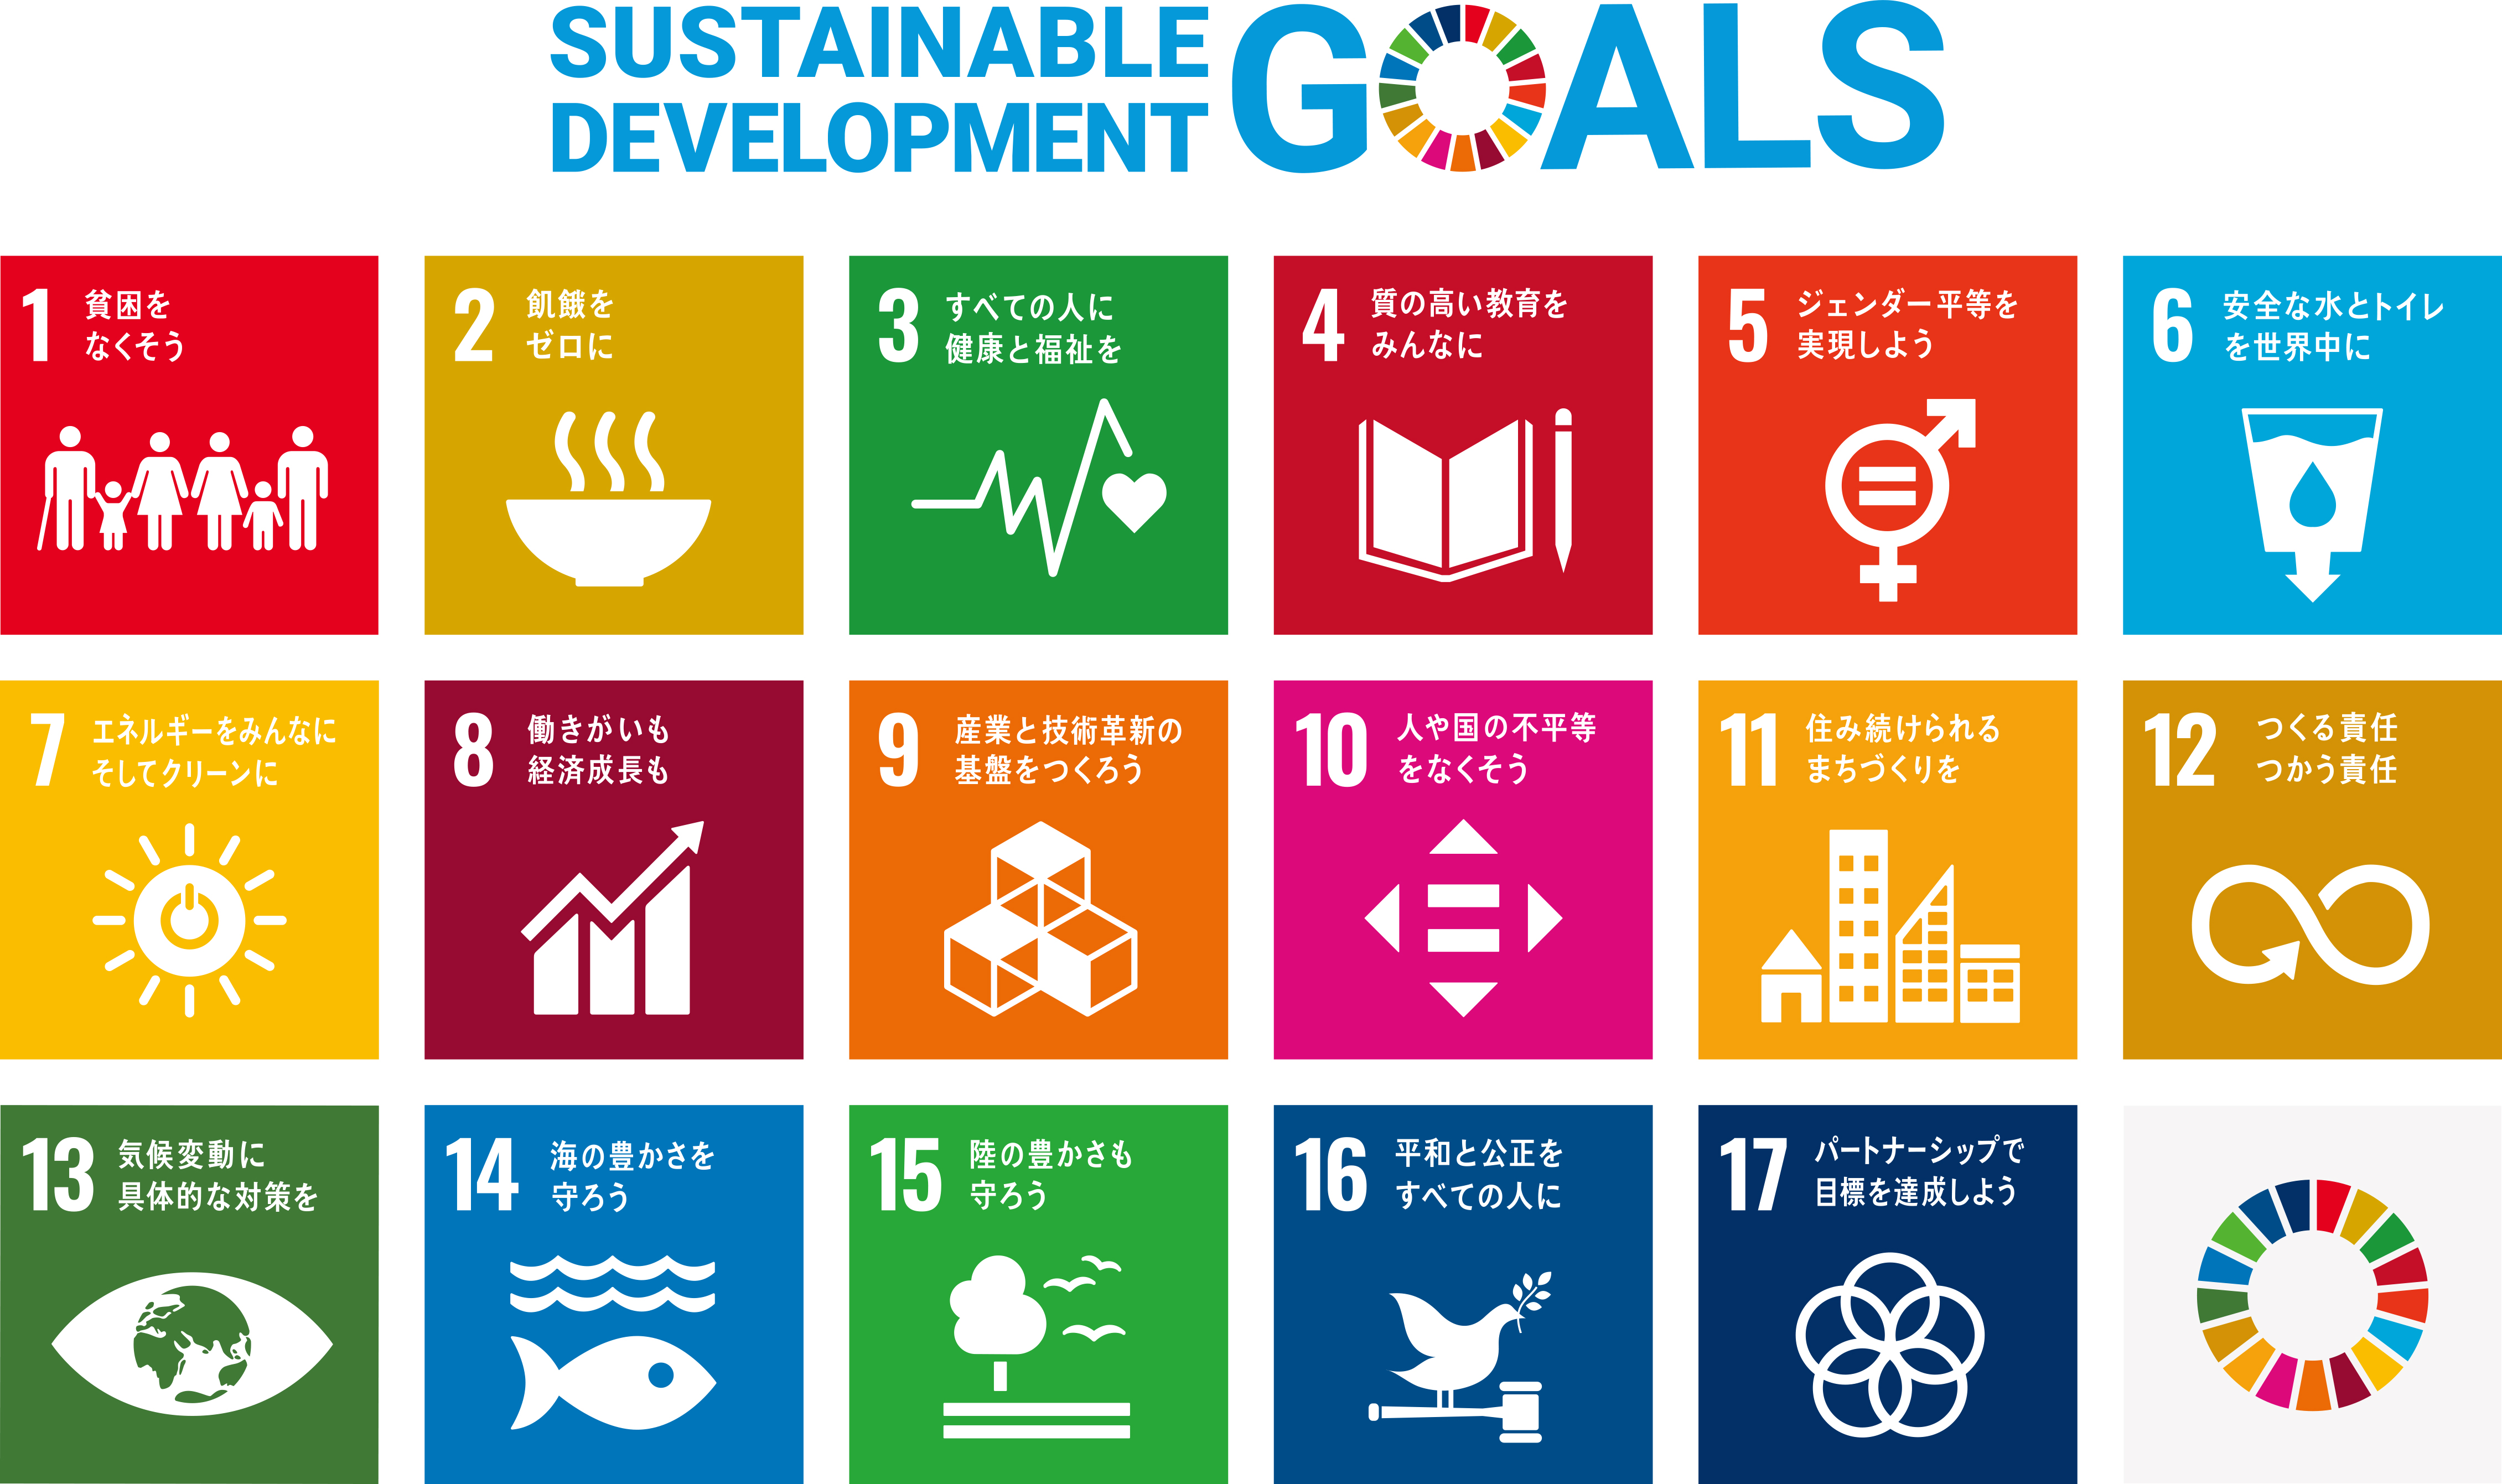 株式会社ウィンフィールド・ライフリサーチは持続可能な開発目標（SDGs）を支援しています